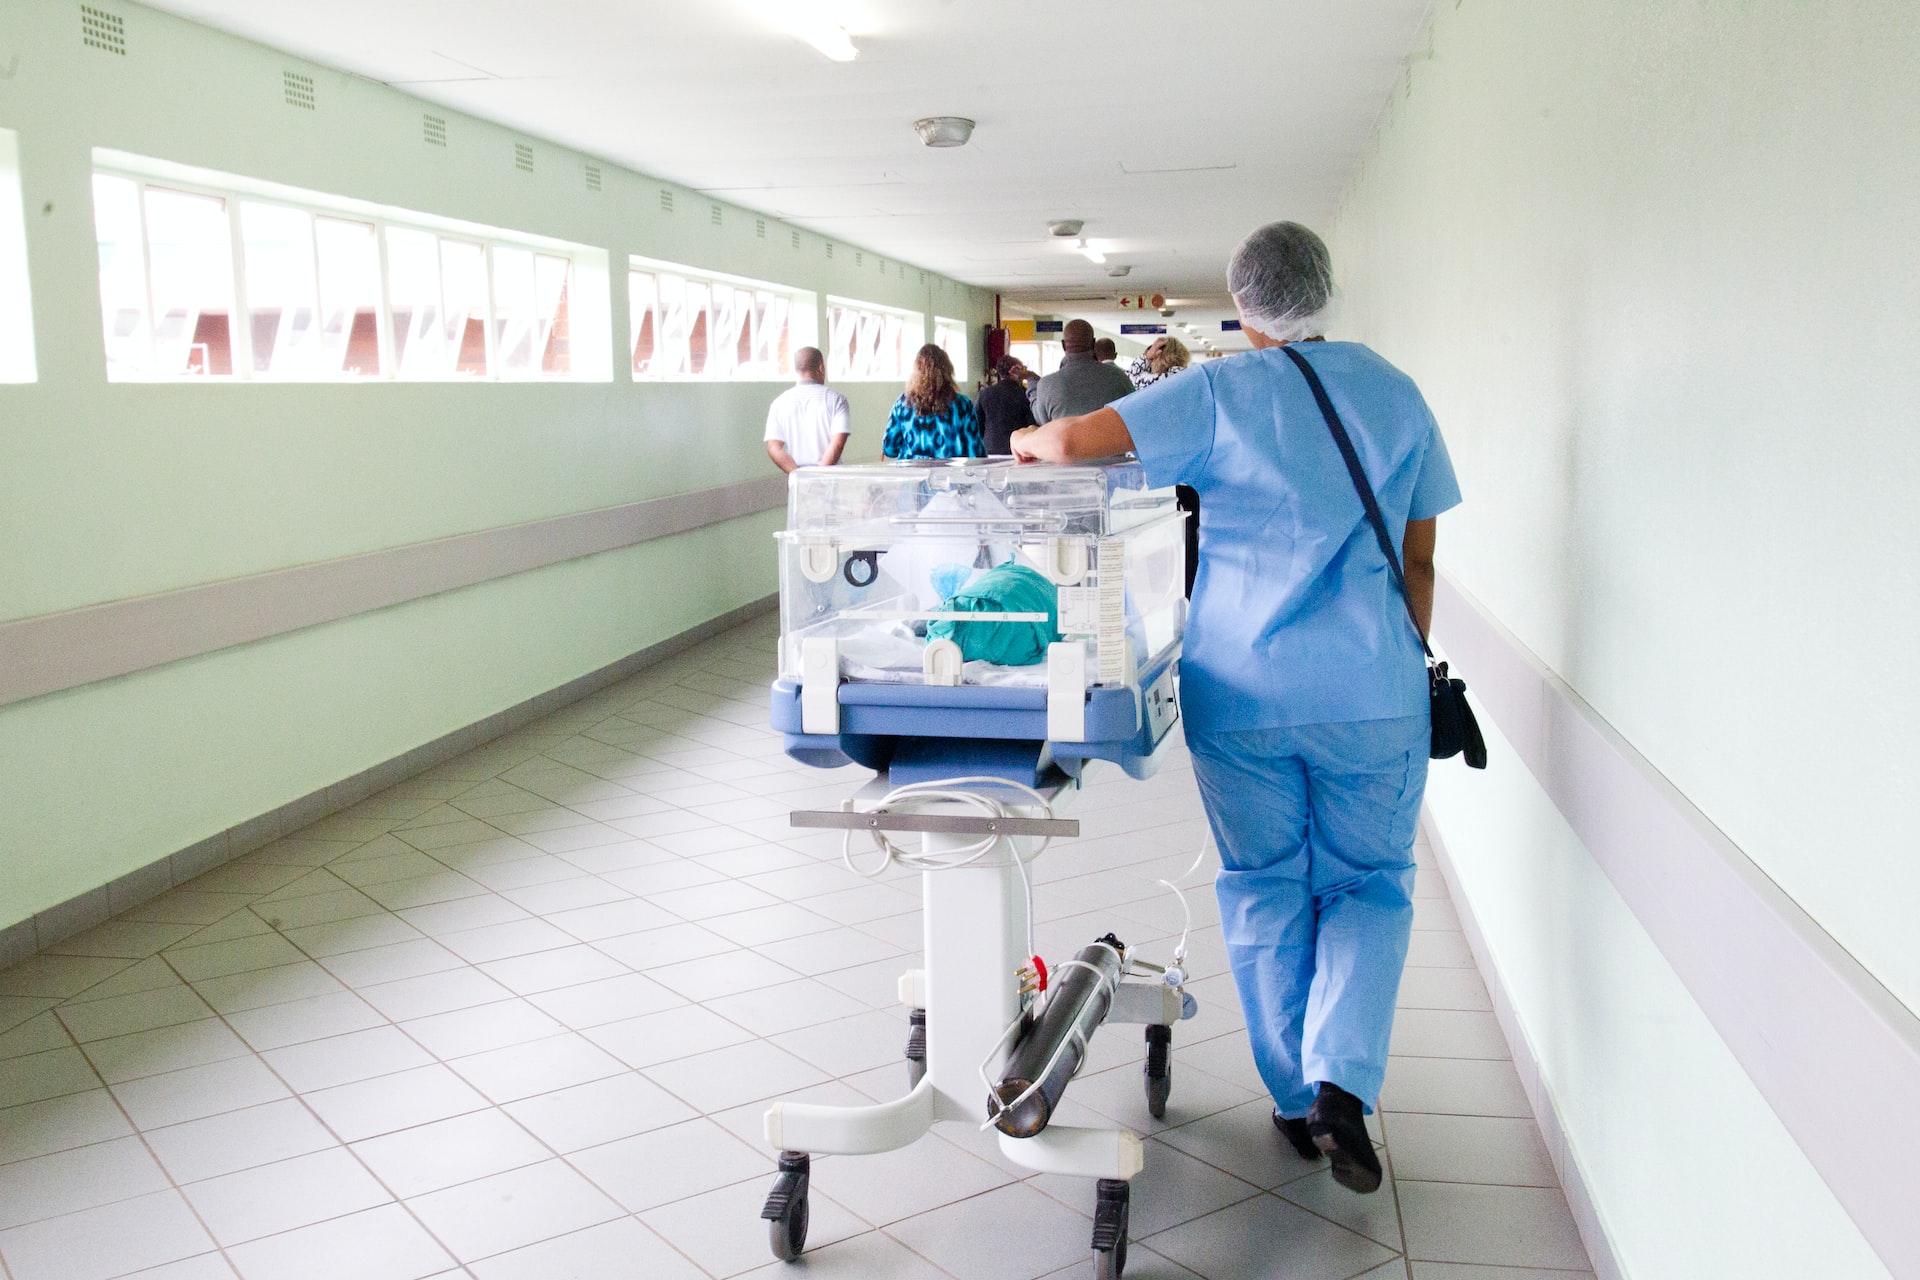 triage team walking down a hallway in a hospital